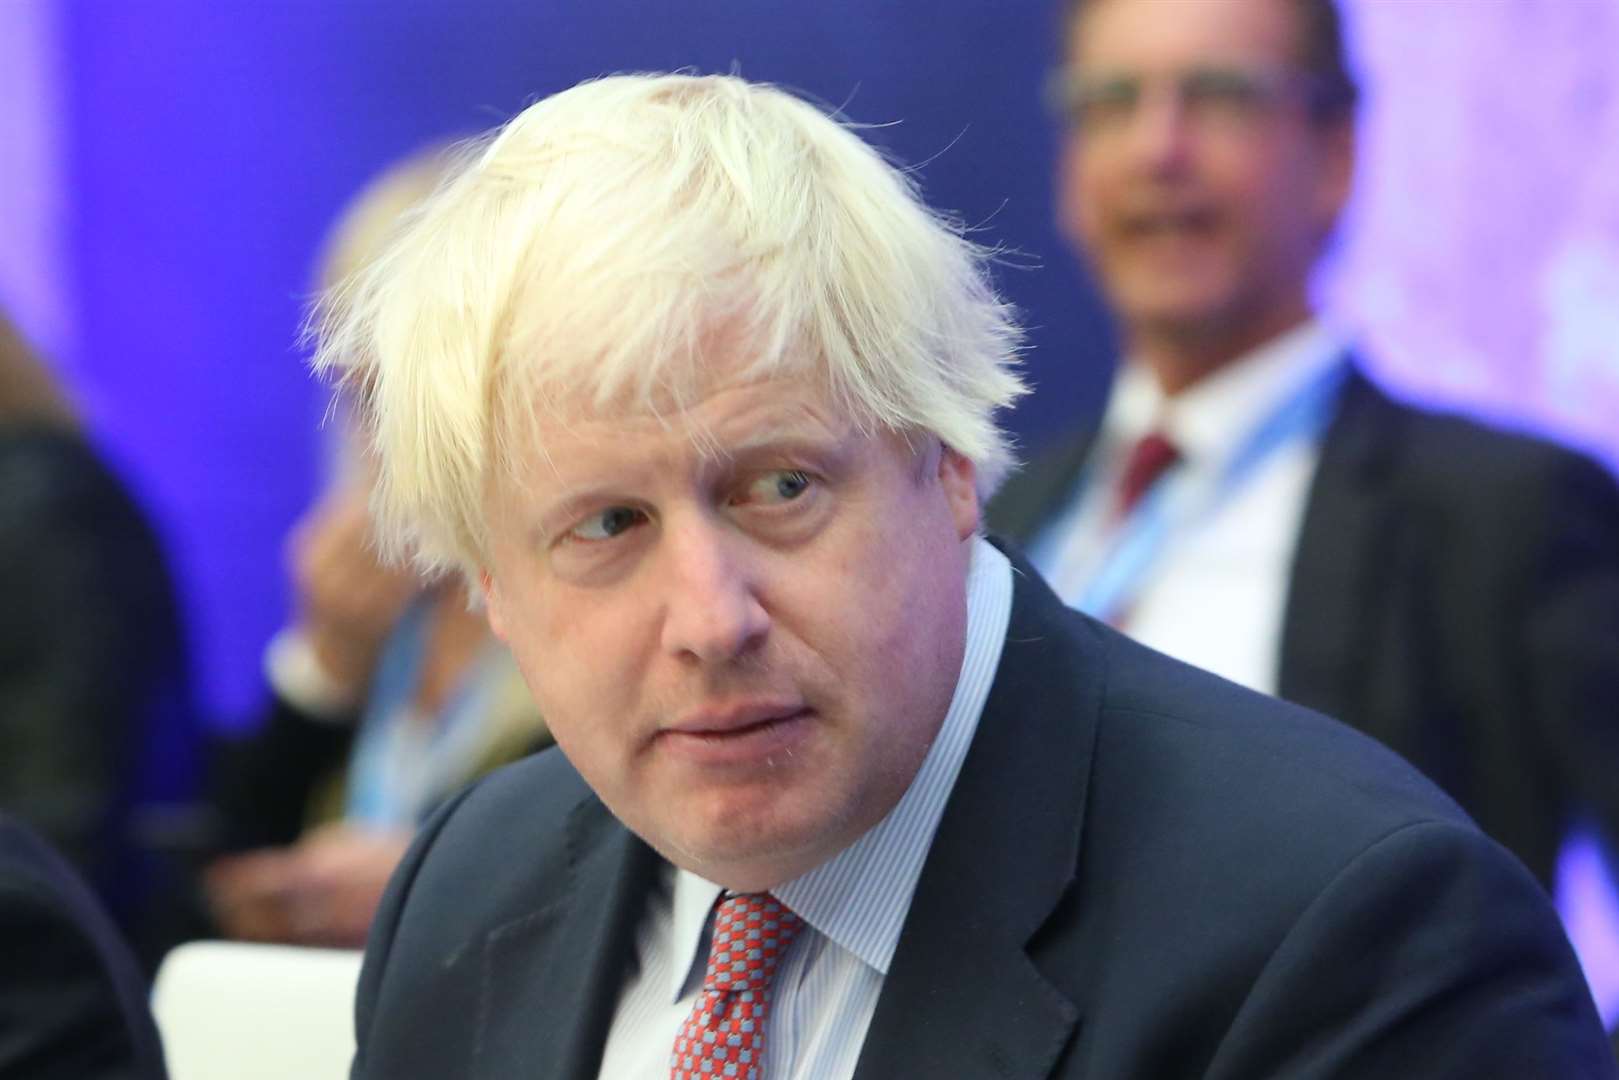 Boris Johnson faces mutinous MPs